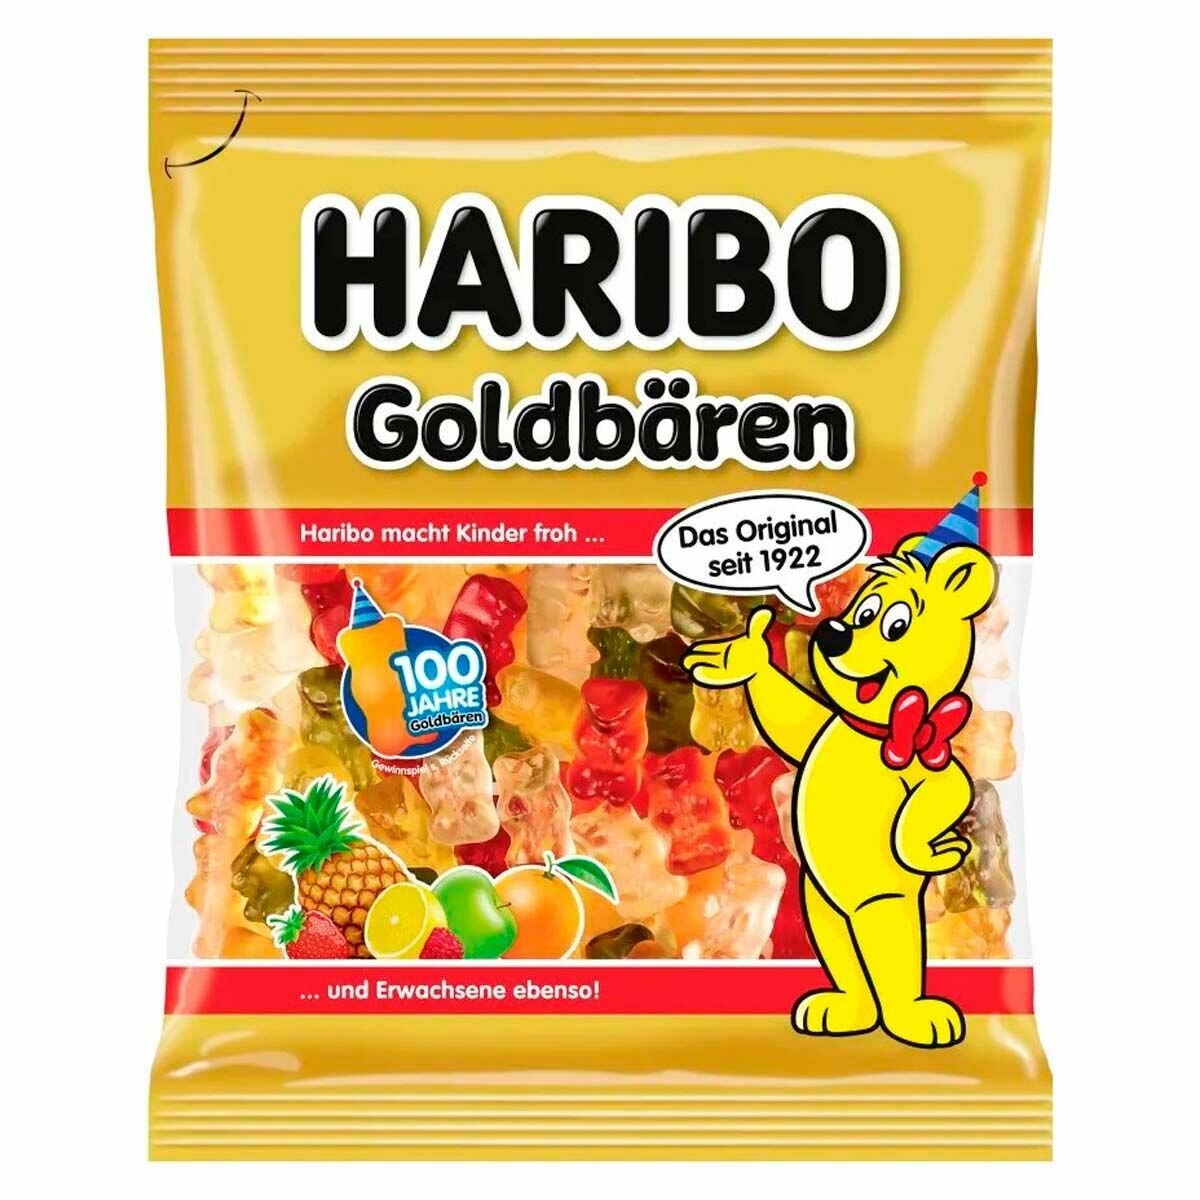 Жевательный мармелад Haribo Goldbaren 100 Jahre - мишки (Германия), 175 г